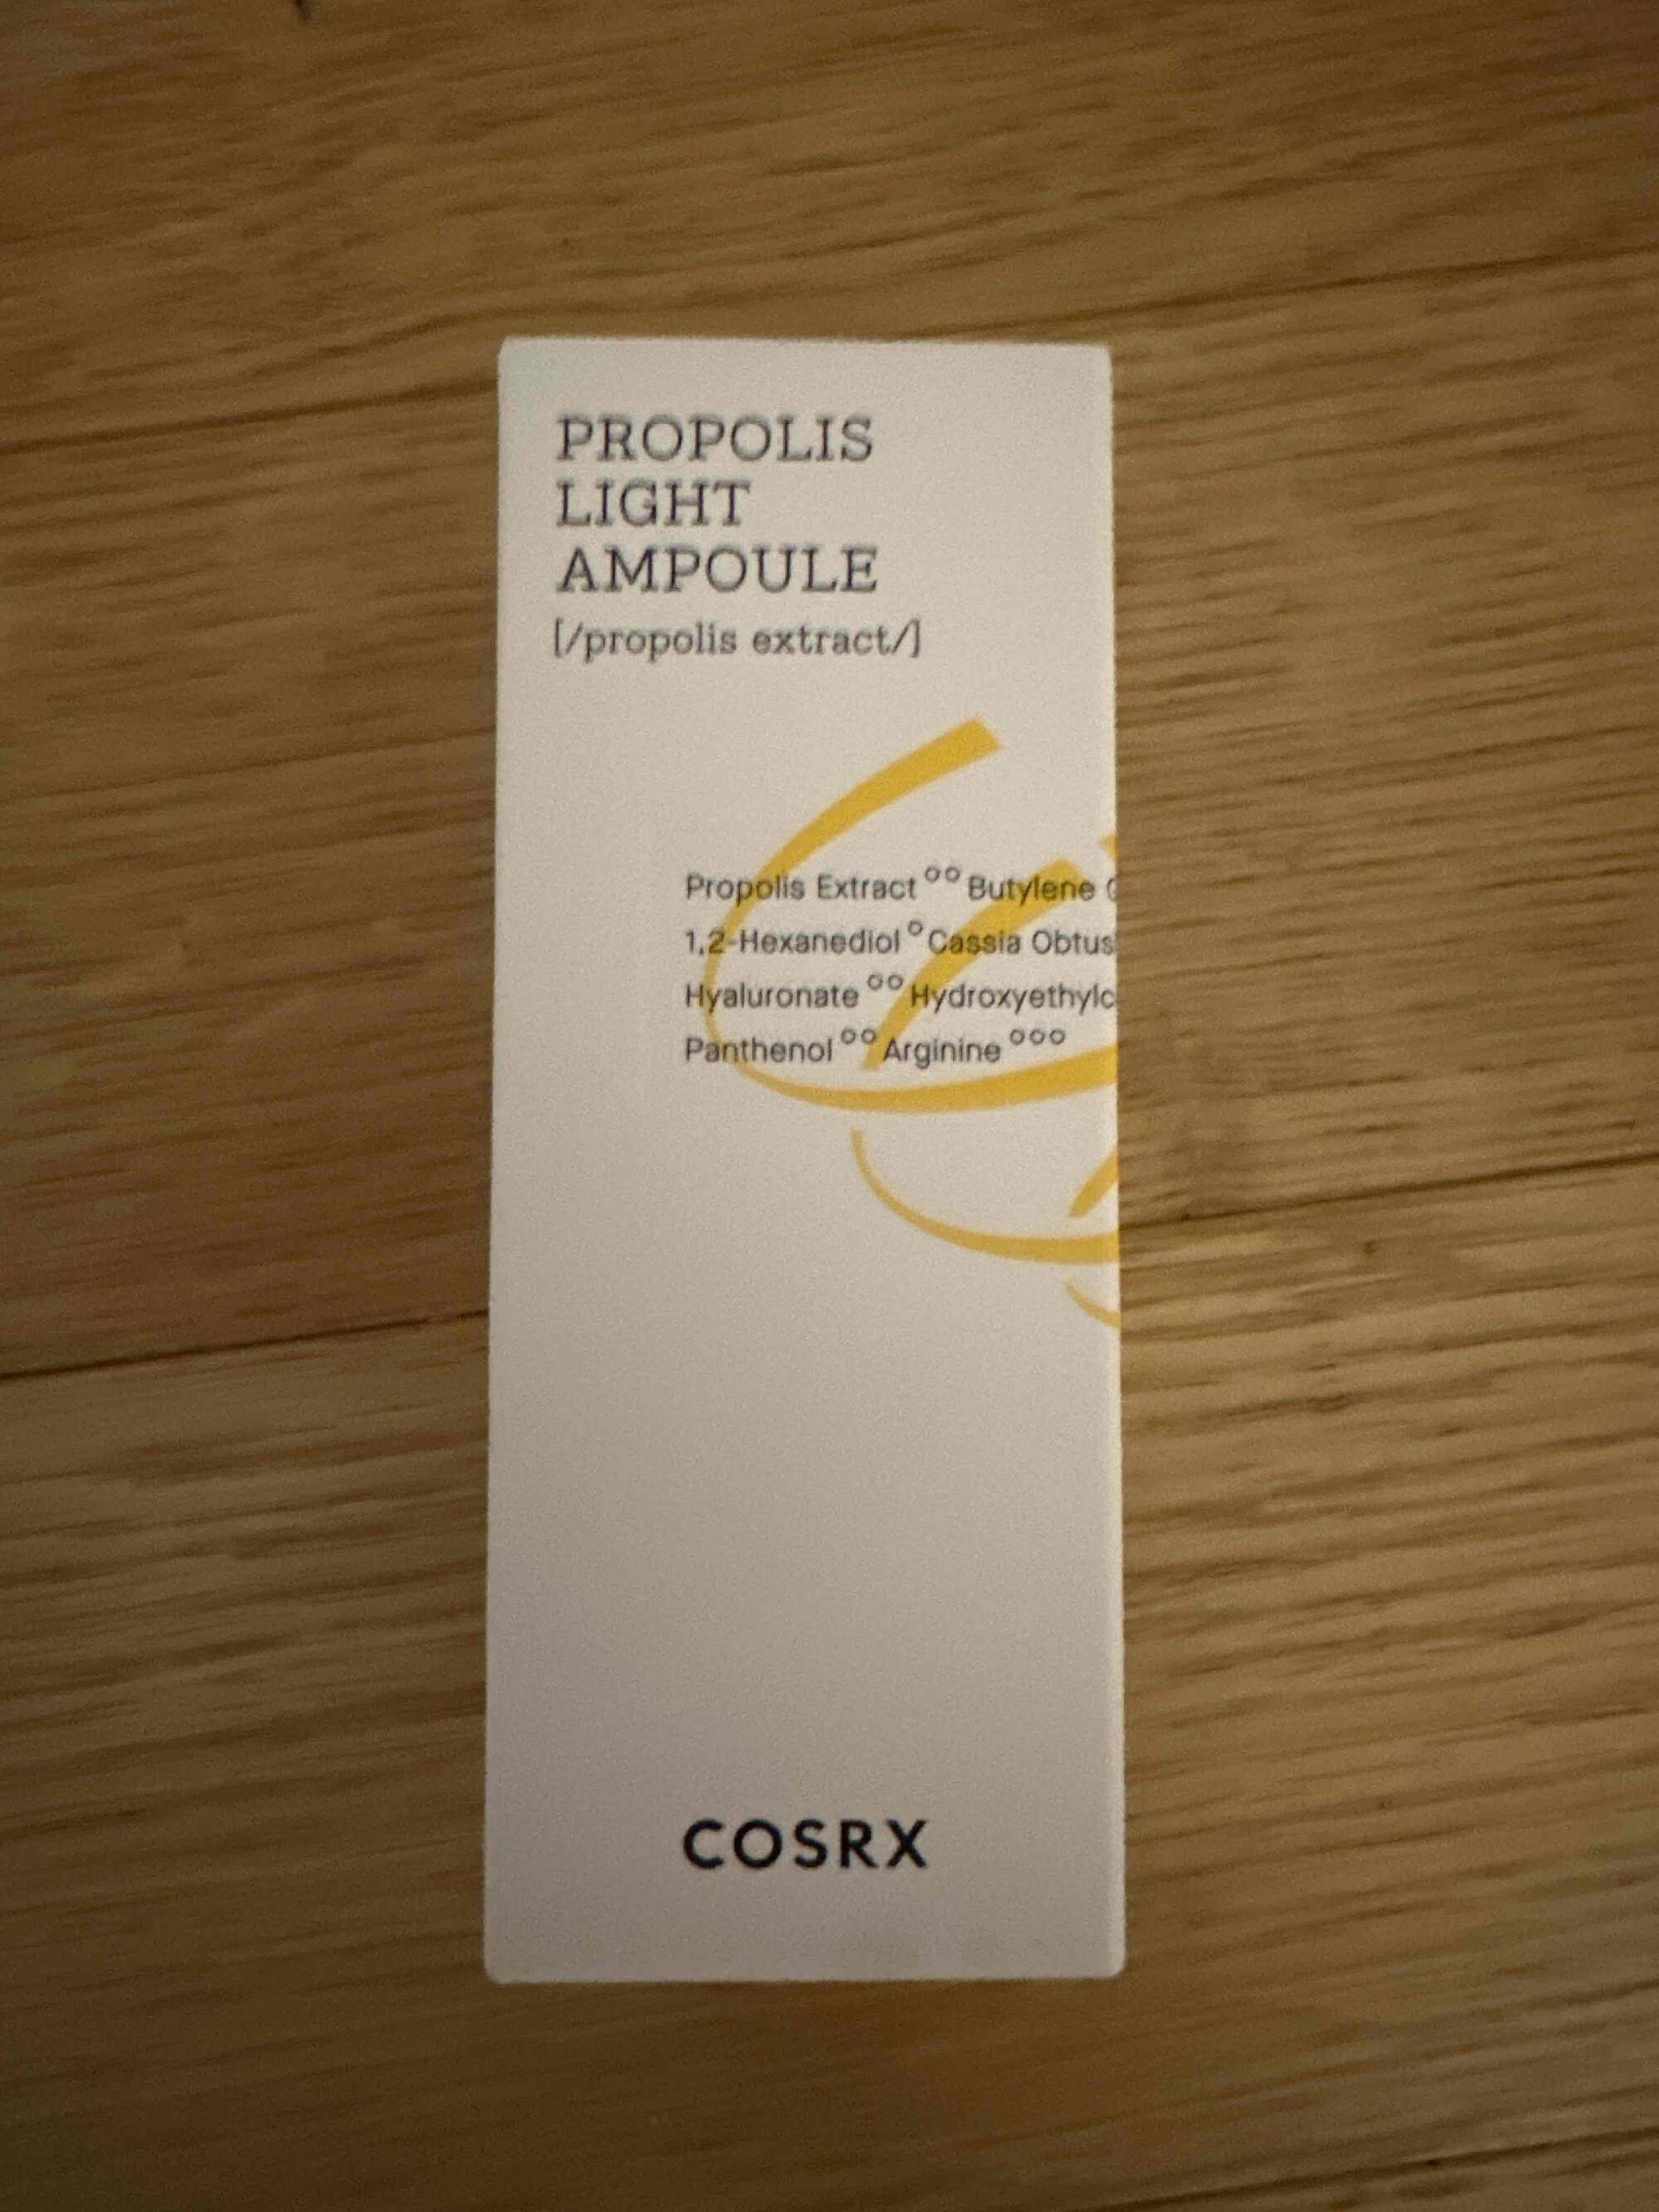 COSRX - Propolis light ampoule